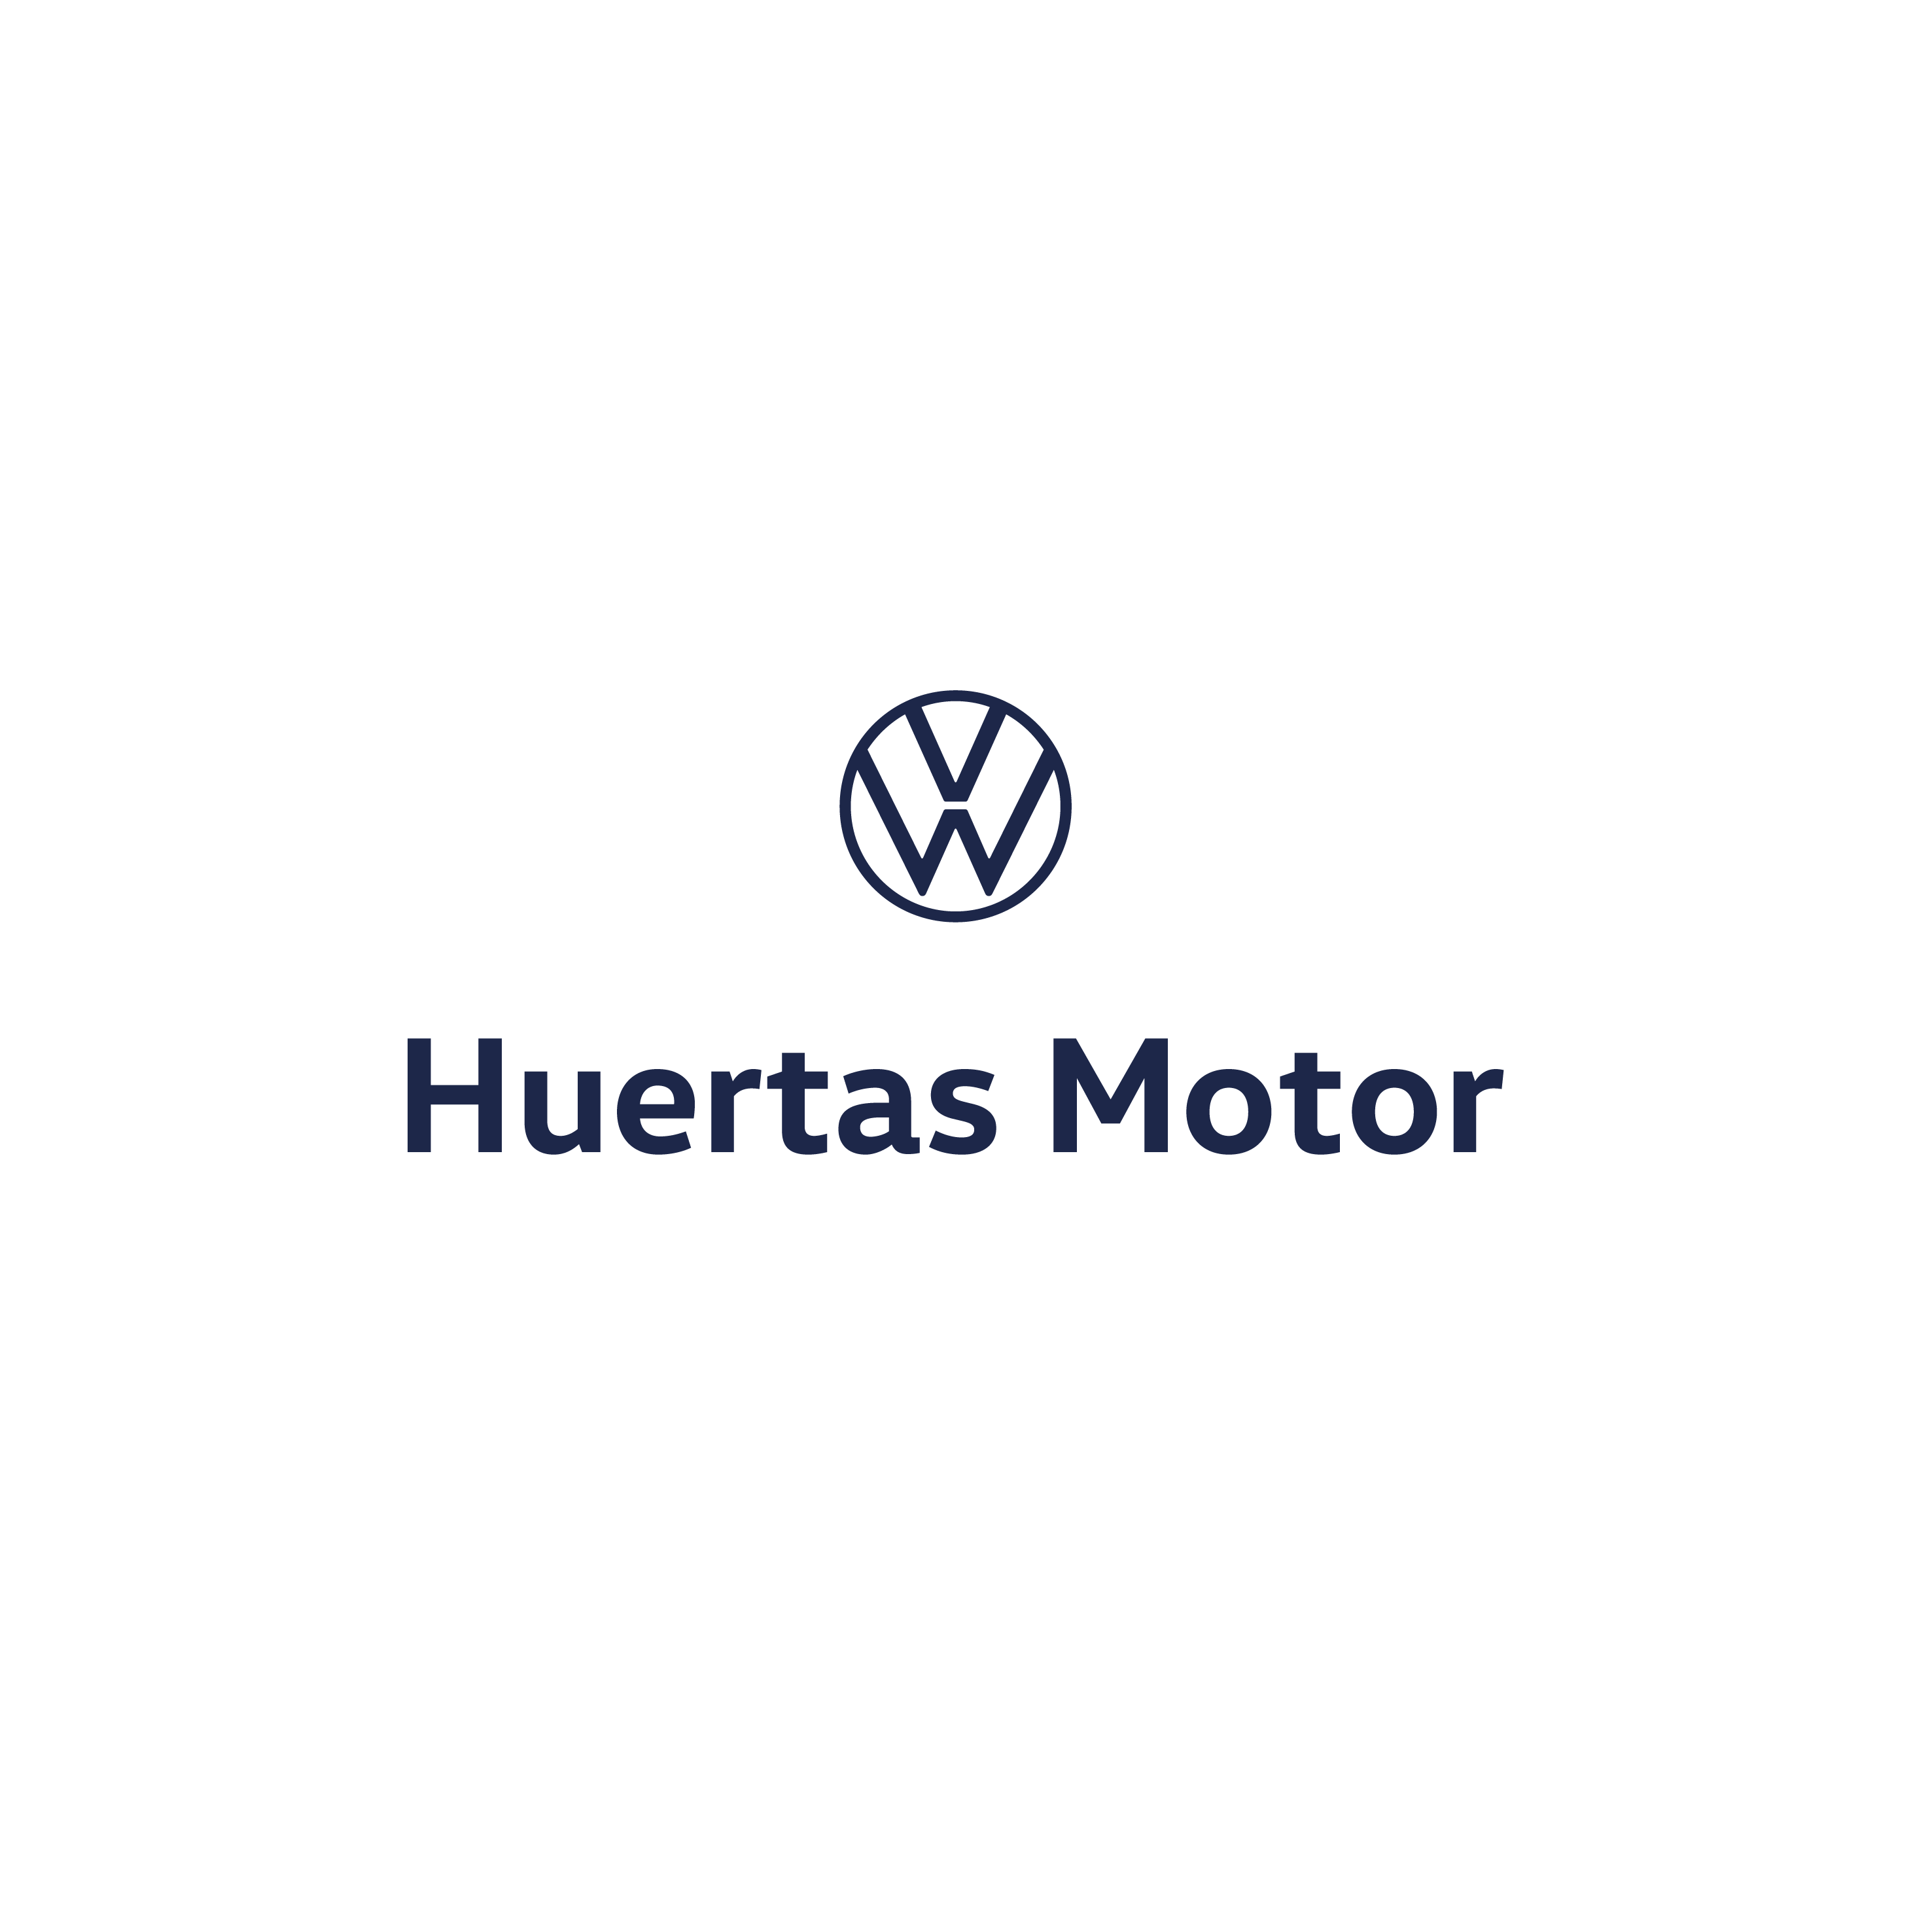 Volkswagen Huertas Motor - Murcia Murcia